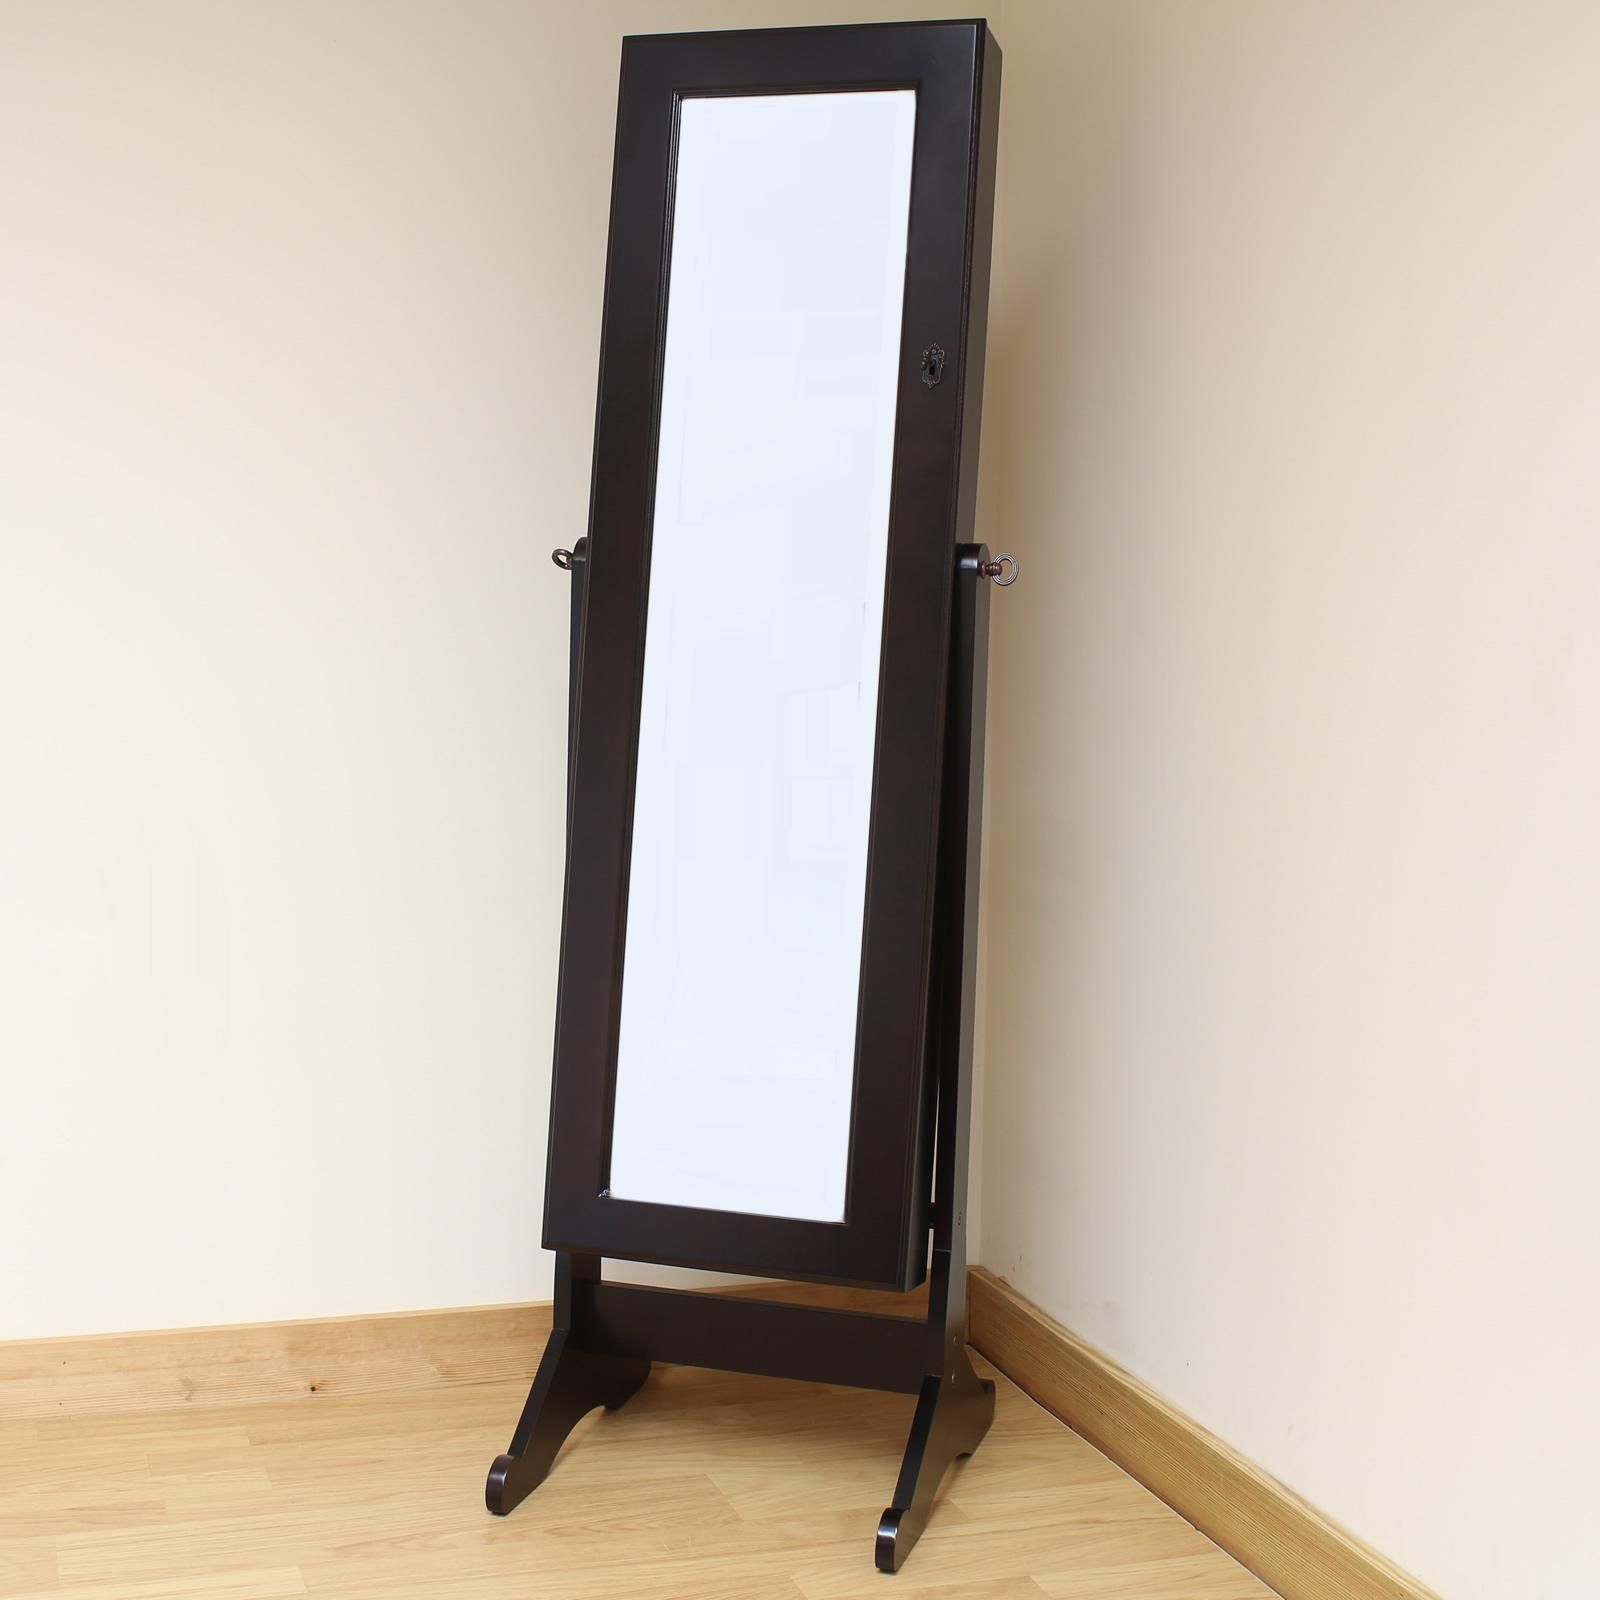 Homeware: Oval Full Length Standing Mirror | Large Floor Mirrors Inside Large Free Standing Mirror Full Length (Photo 4 of 20)